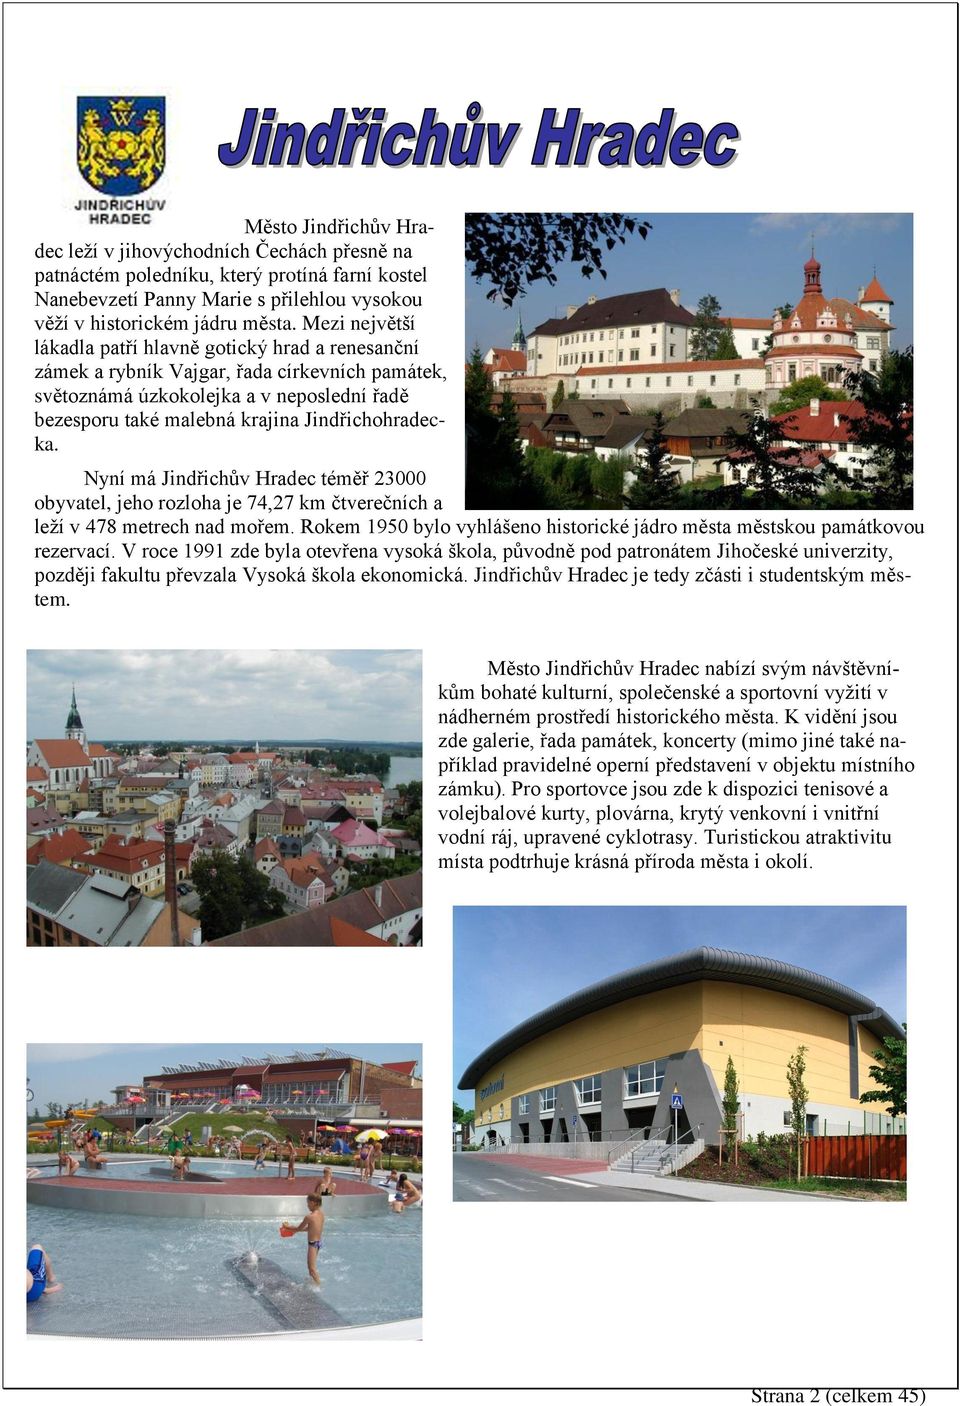 Jindřichohradecka. Nyní má Jindřichův Hradec téměř 23000 obyvatel, jeho rozloha je 74,27 km čtverečních a leží v 478 metrech nad mořem.